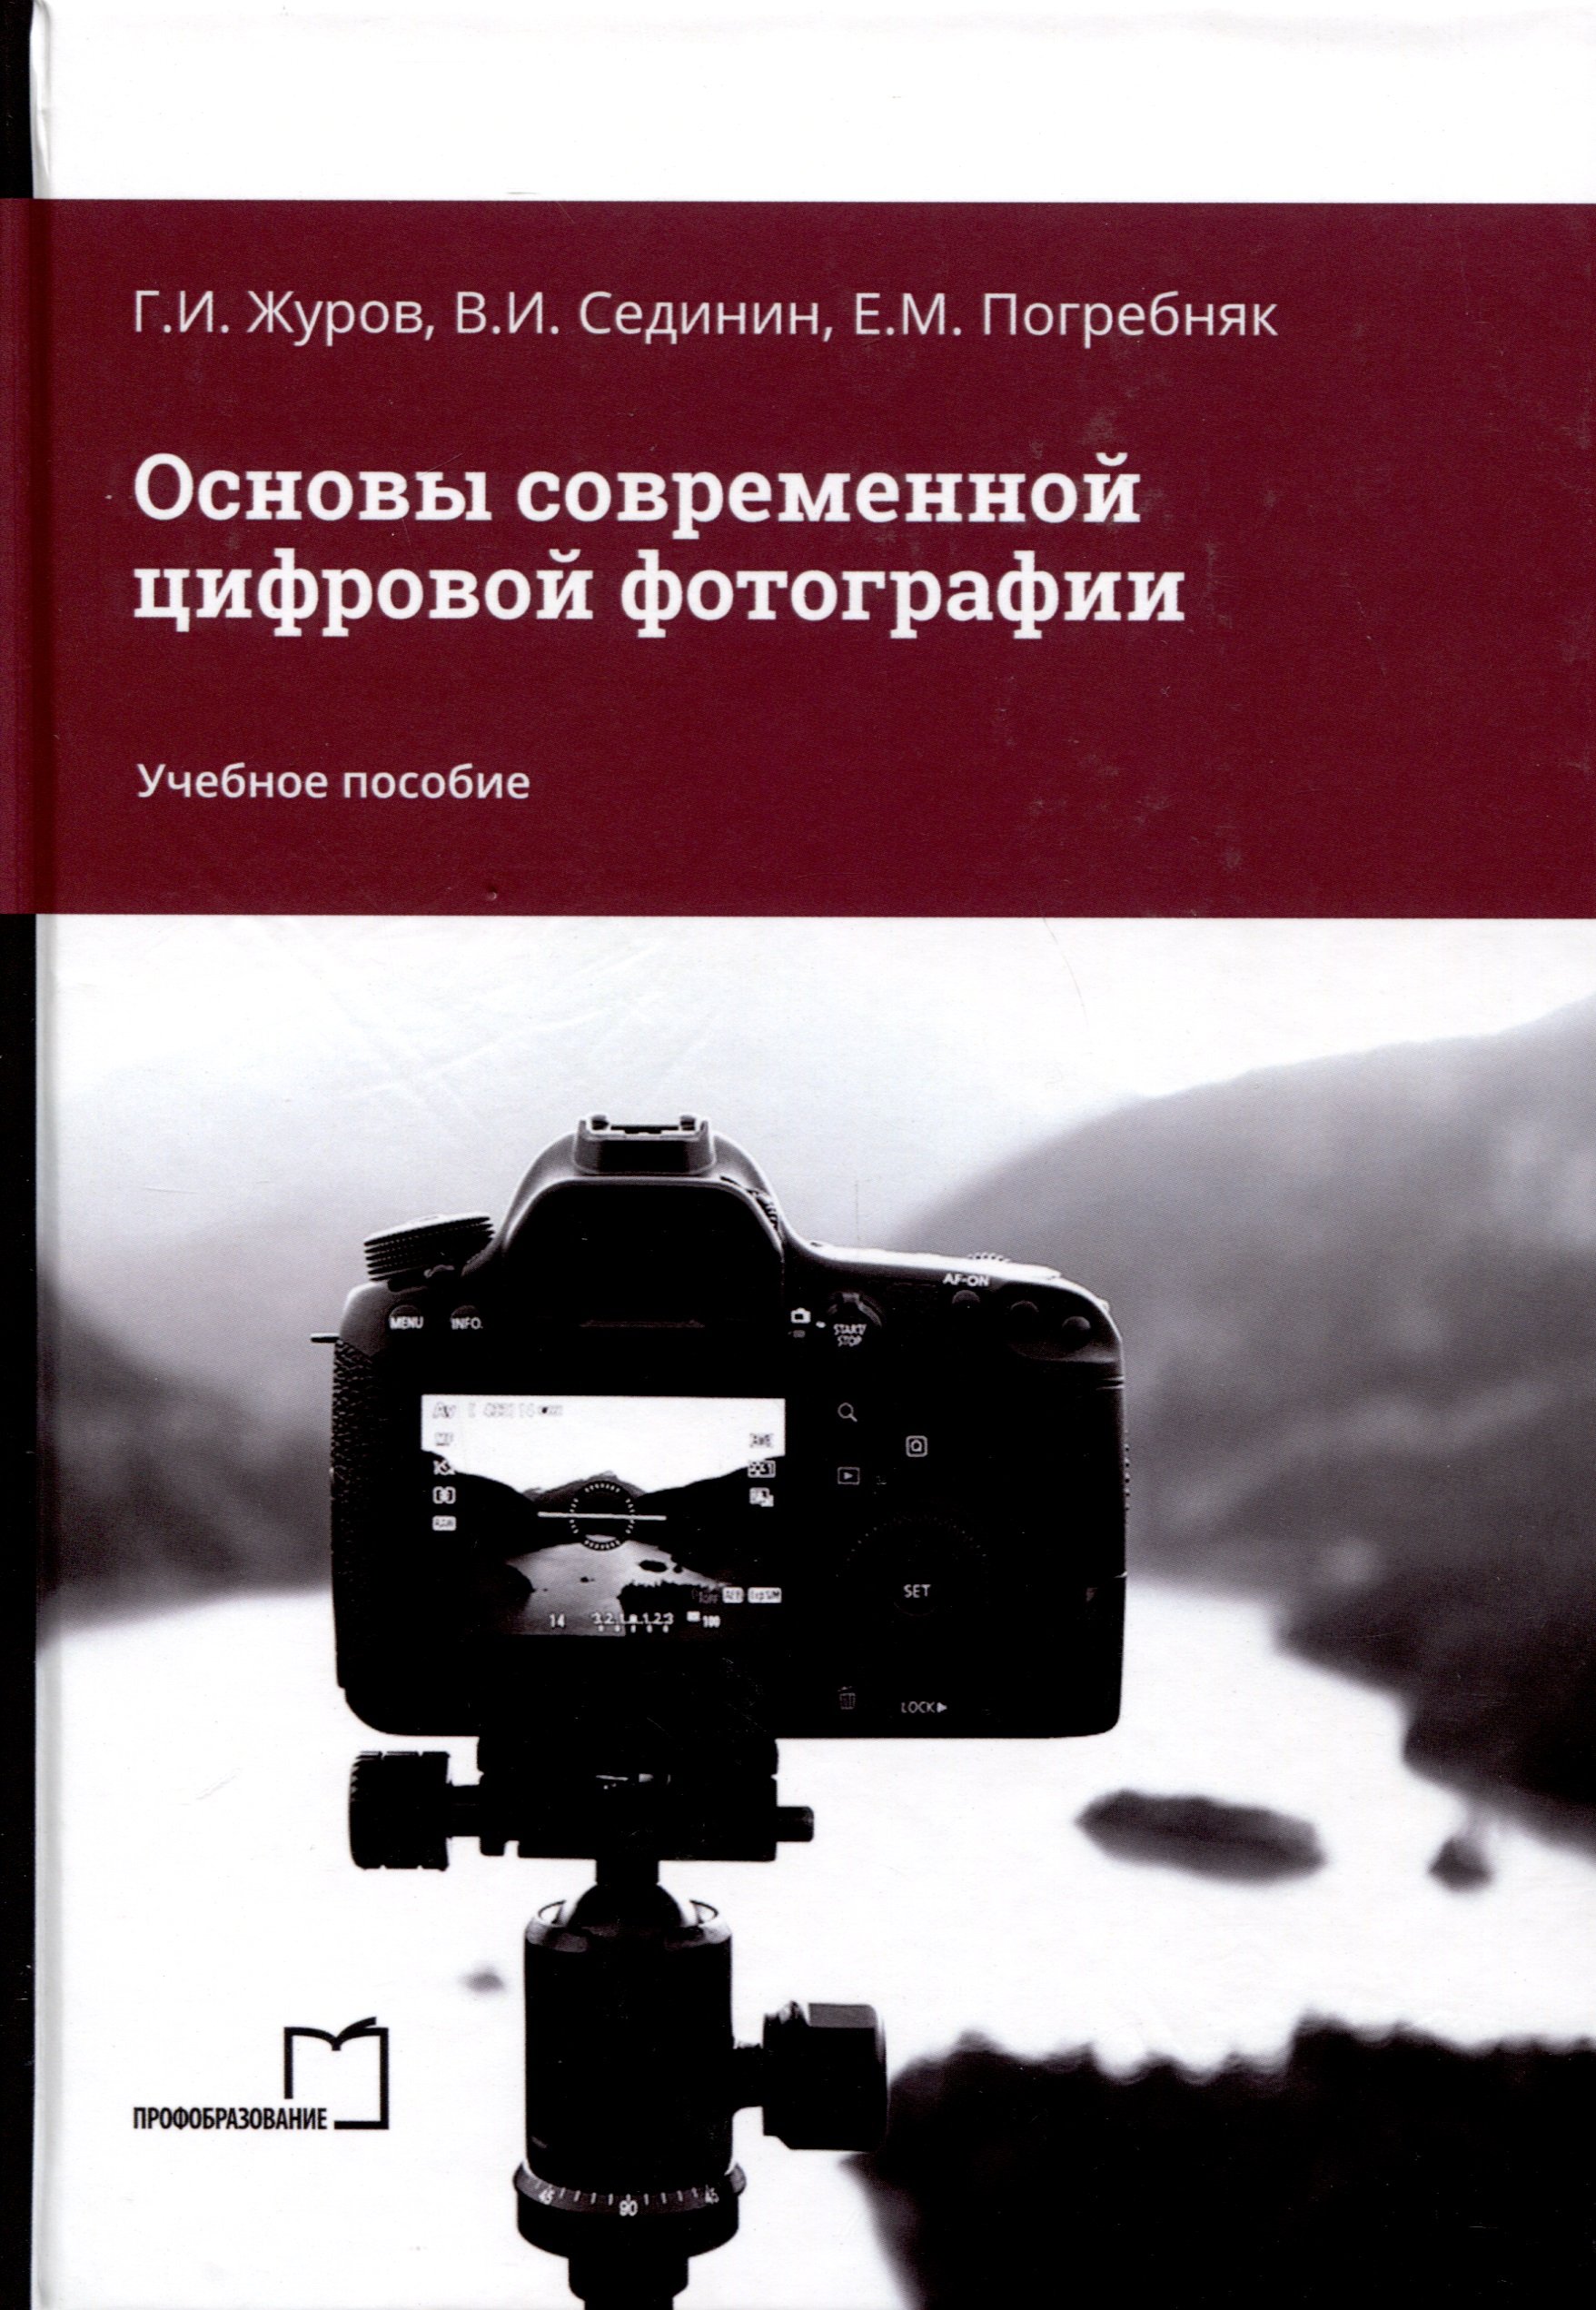 Основы современной цифровой фотографии. Учебное пособие